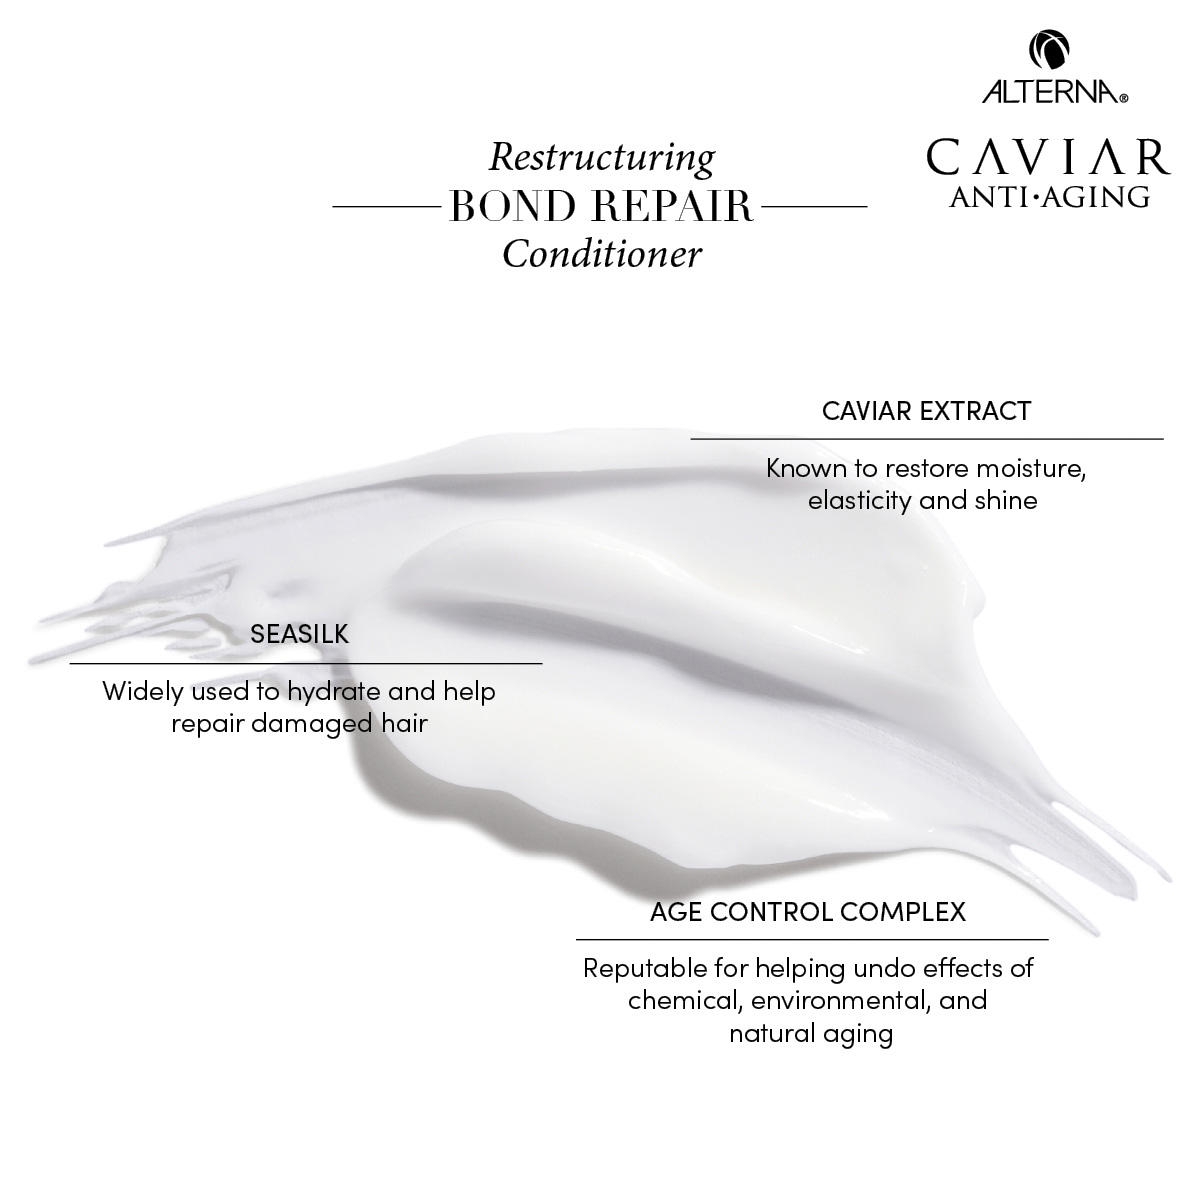 Alterna Caviar Anti-Aging Restructuring Bond Repair Acondicionadores 250 ml - 4